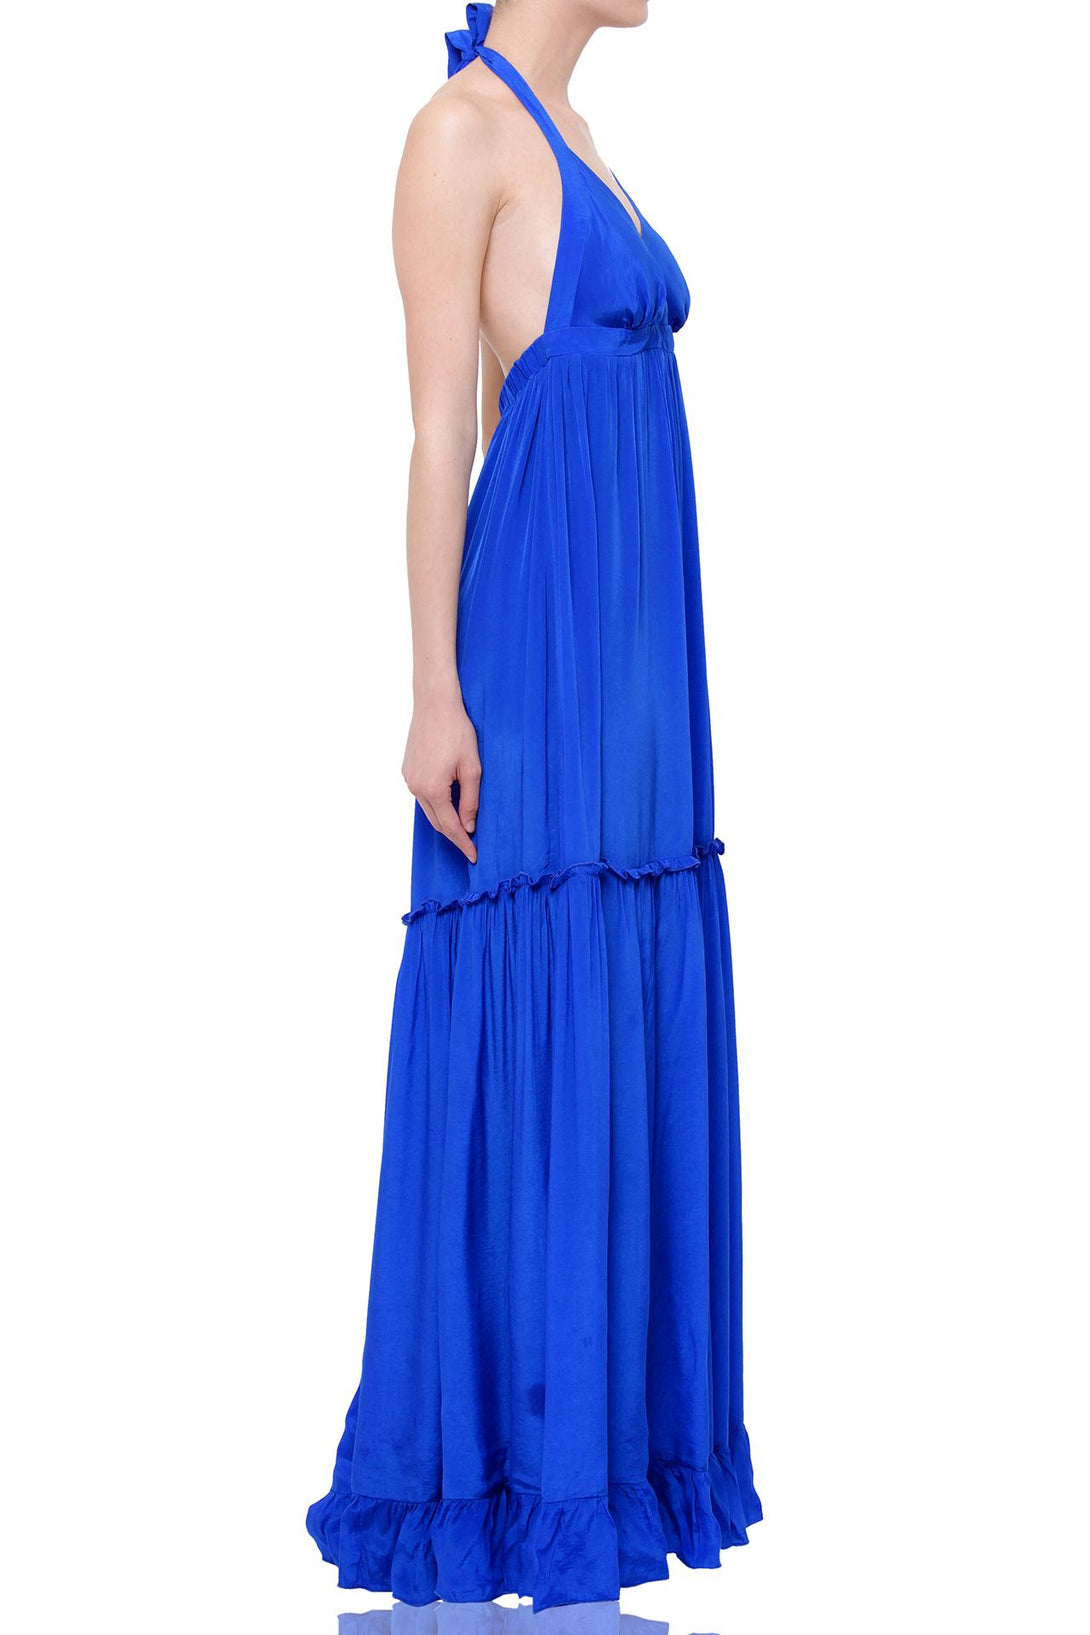  long blue dress formal, summer maxi dresses for women, plunging v neck formal dress,